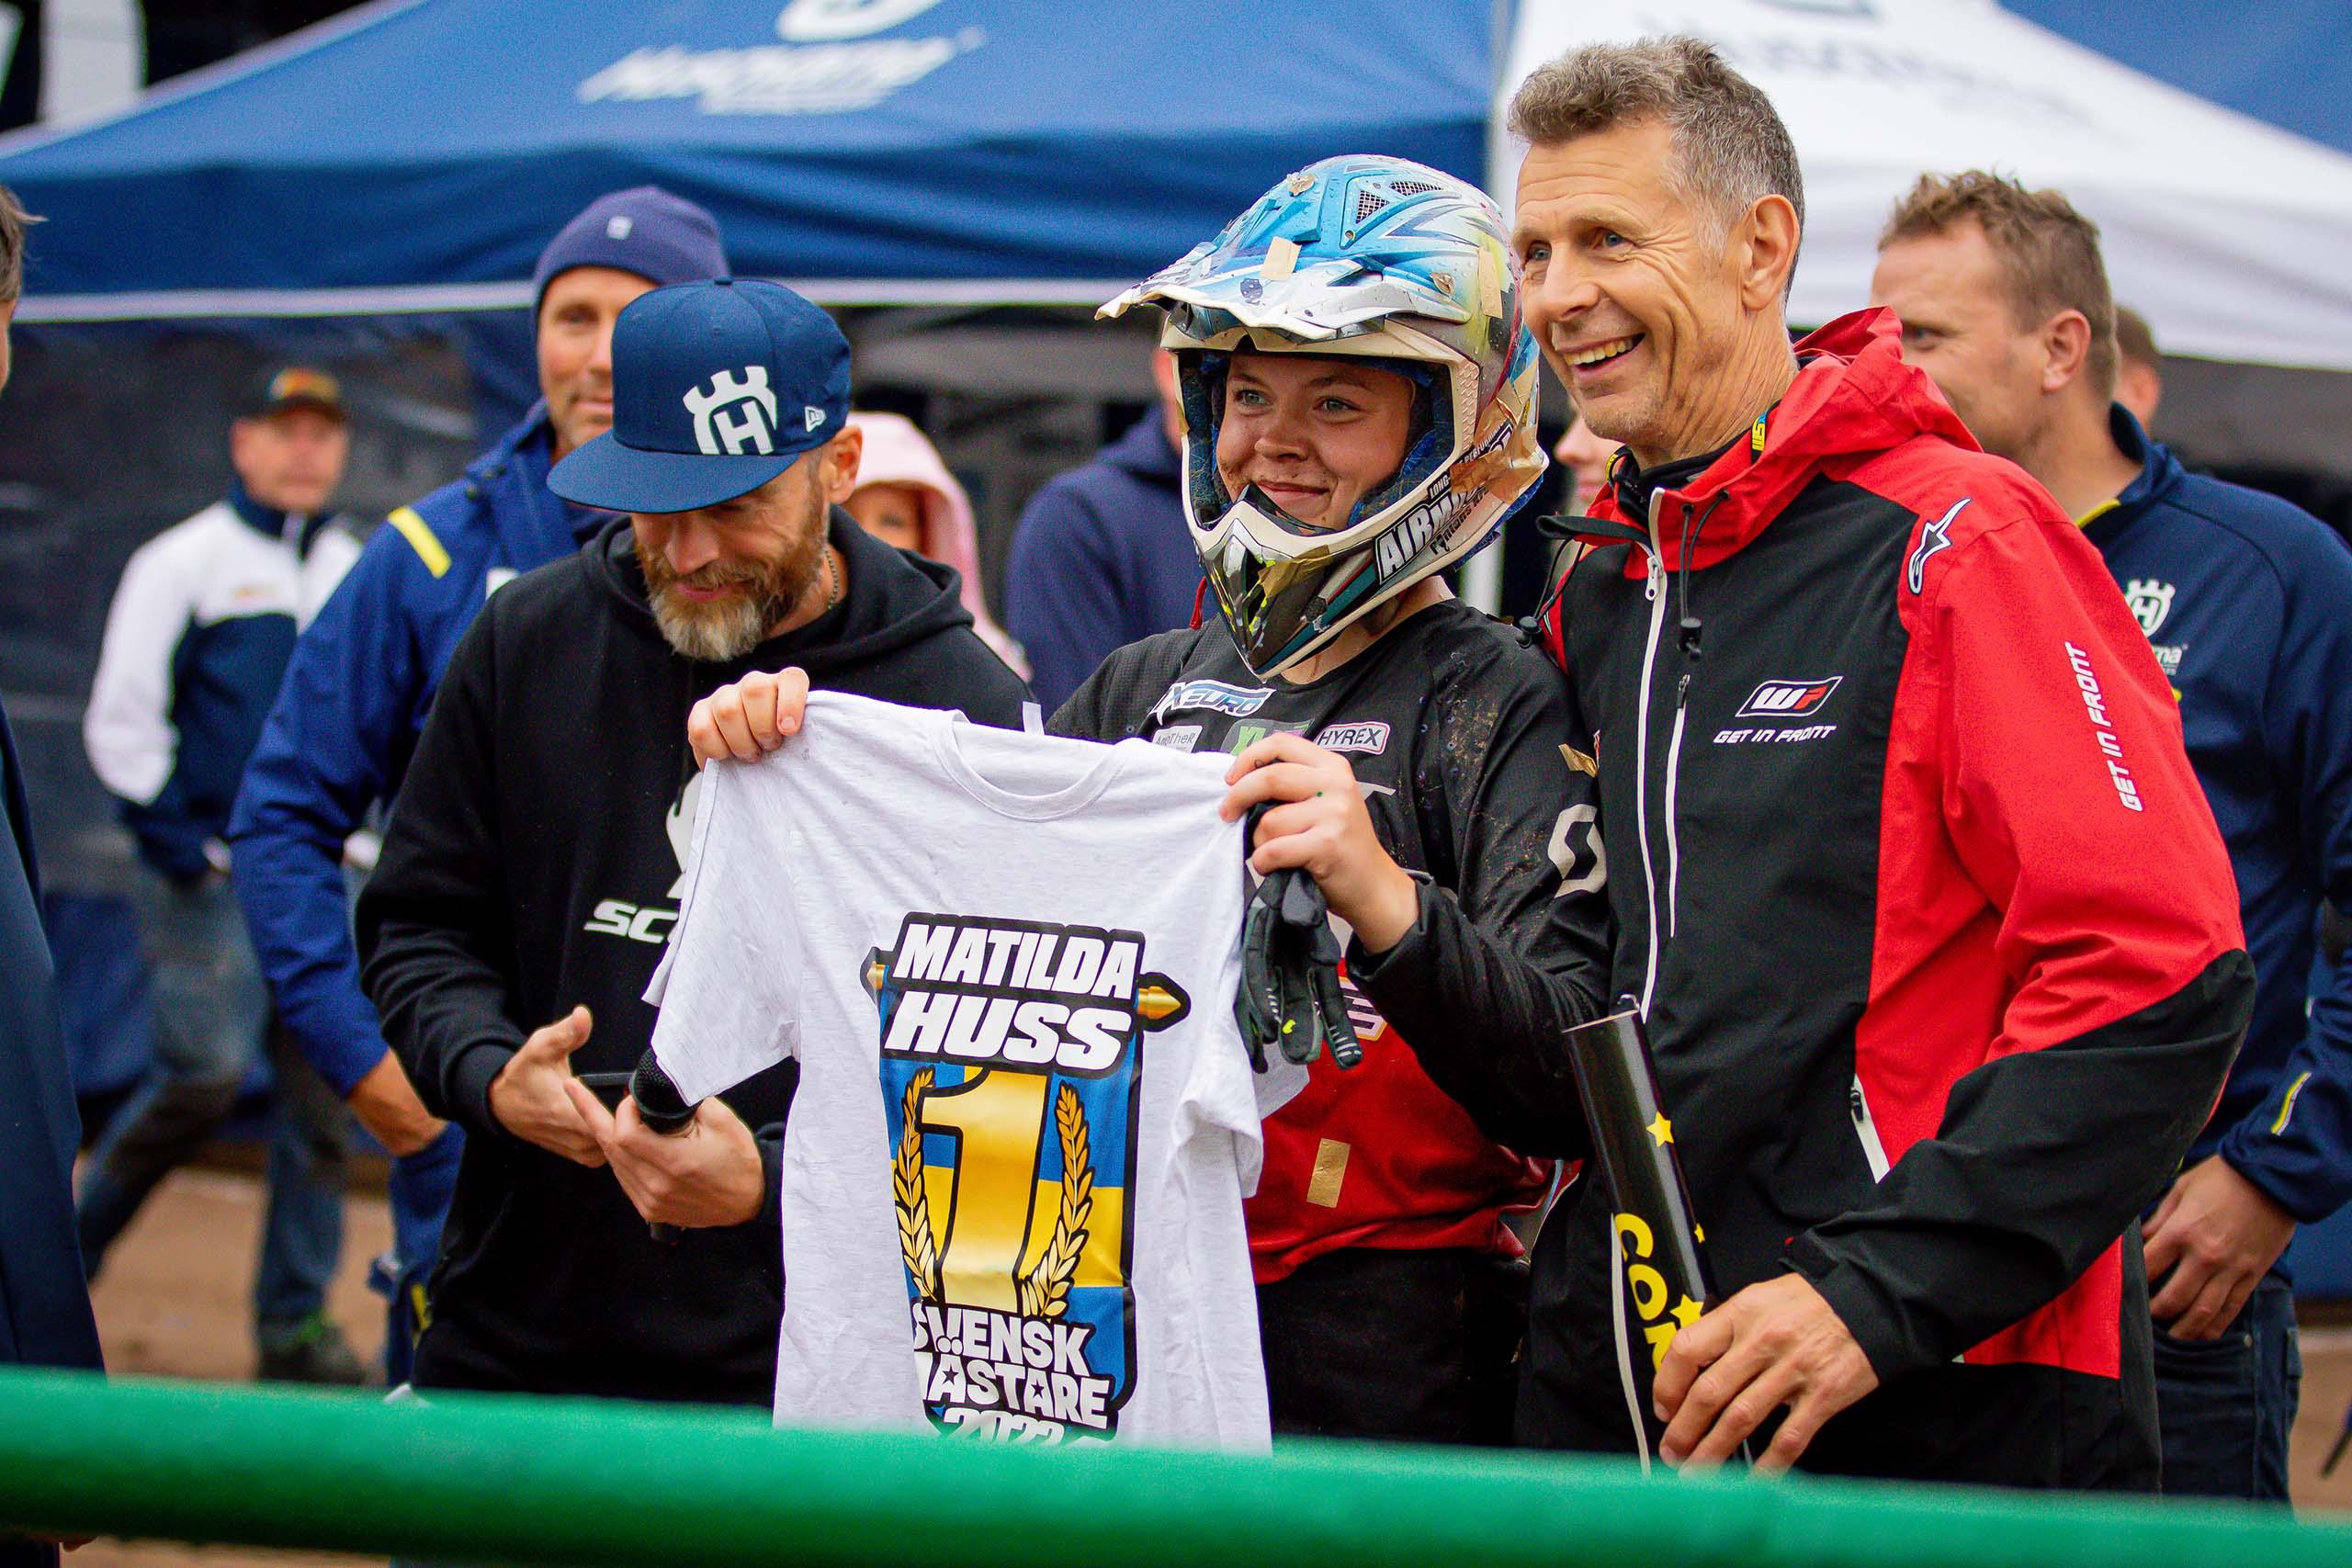 En kvinnlig motocrossförare håller leende upp en t-shirt som det står "Matilda Huss Svensk Mästare 2022" på.